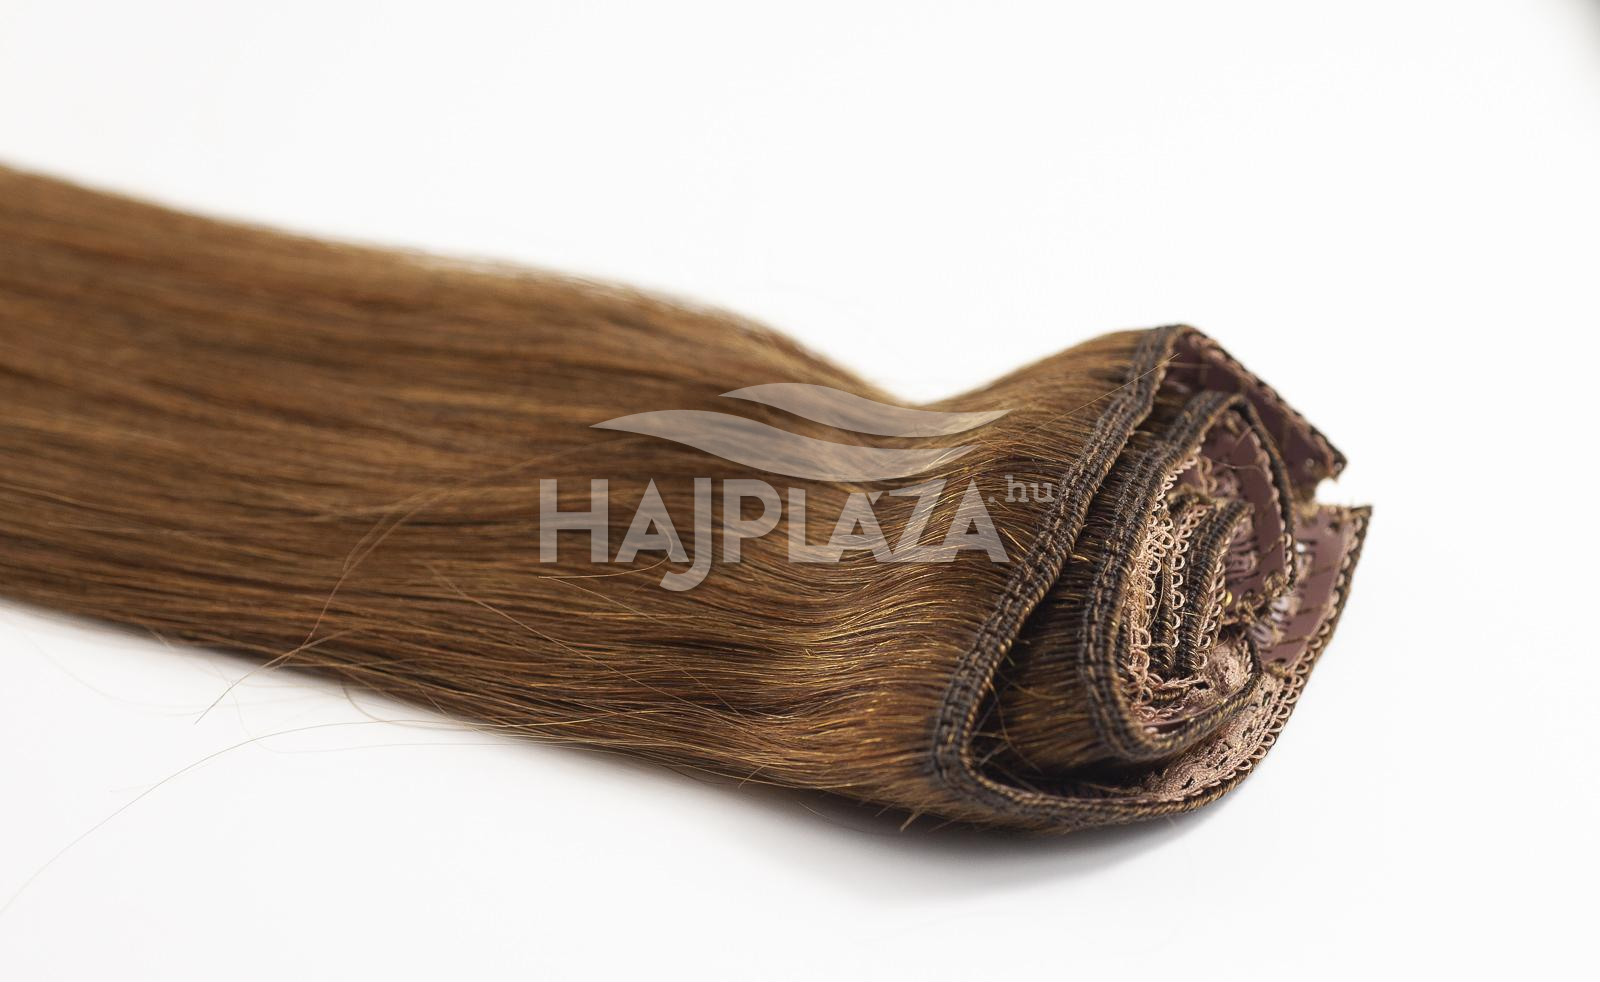  Festett középbarna  csatos haj - 70-75 cm